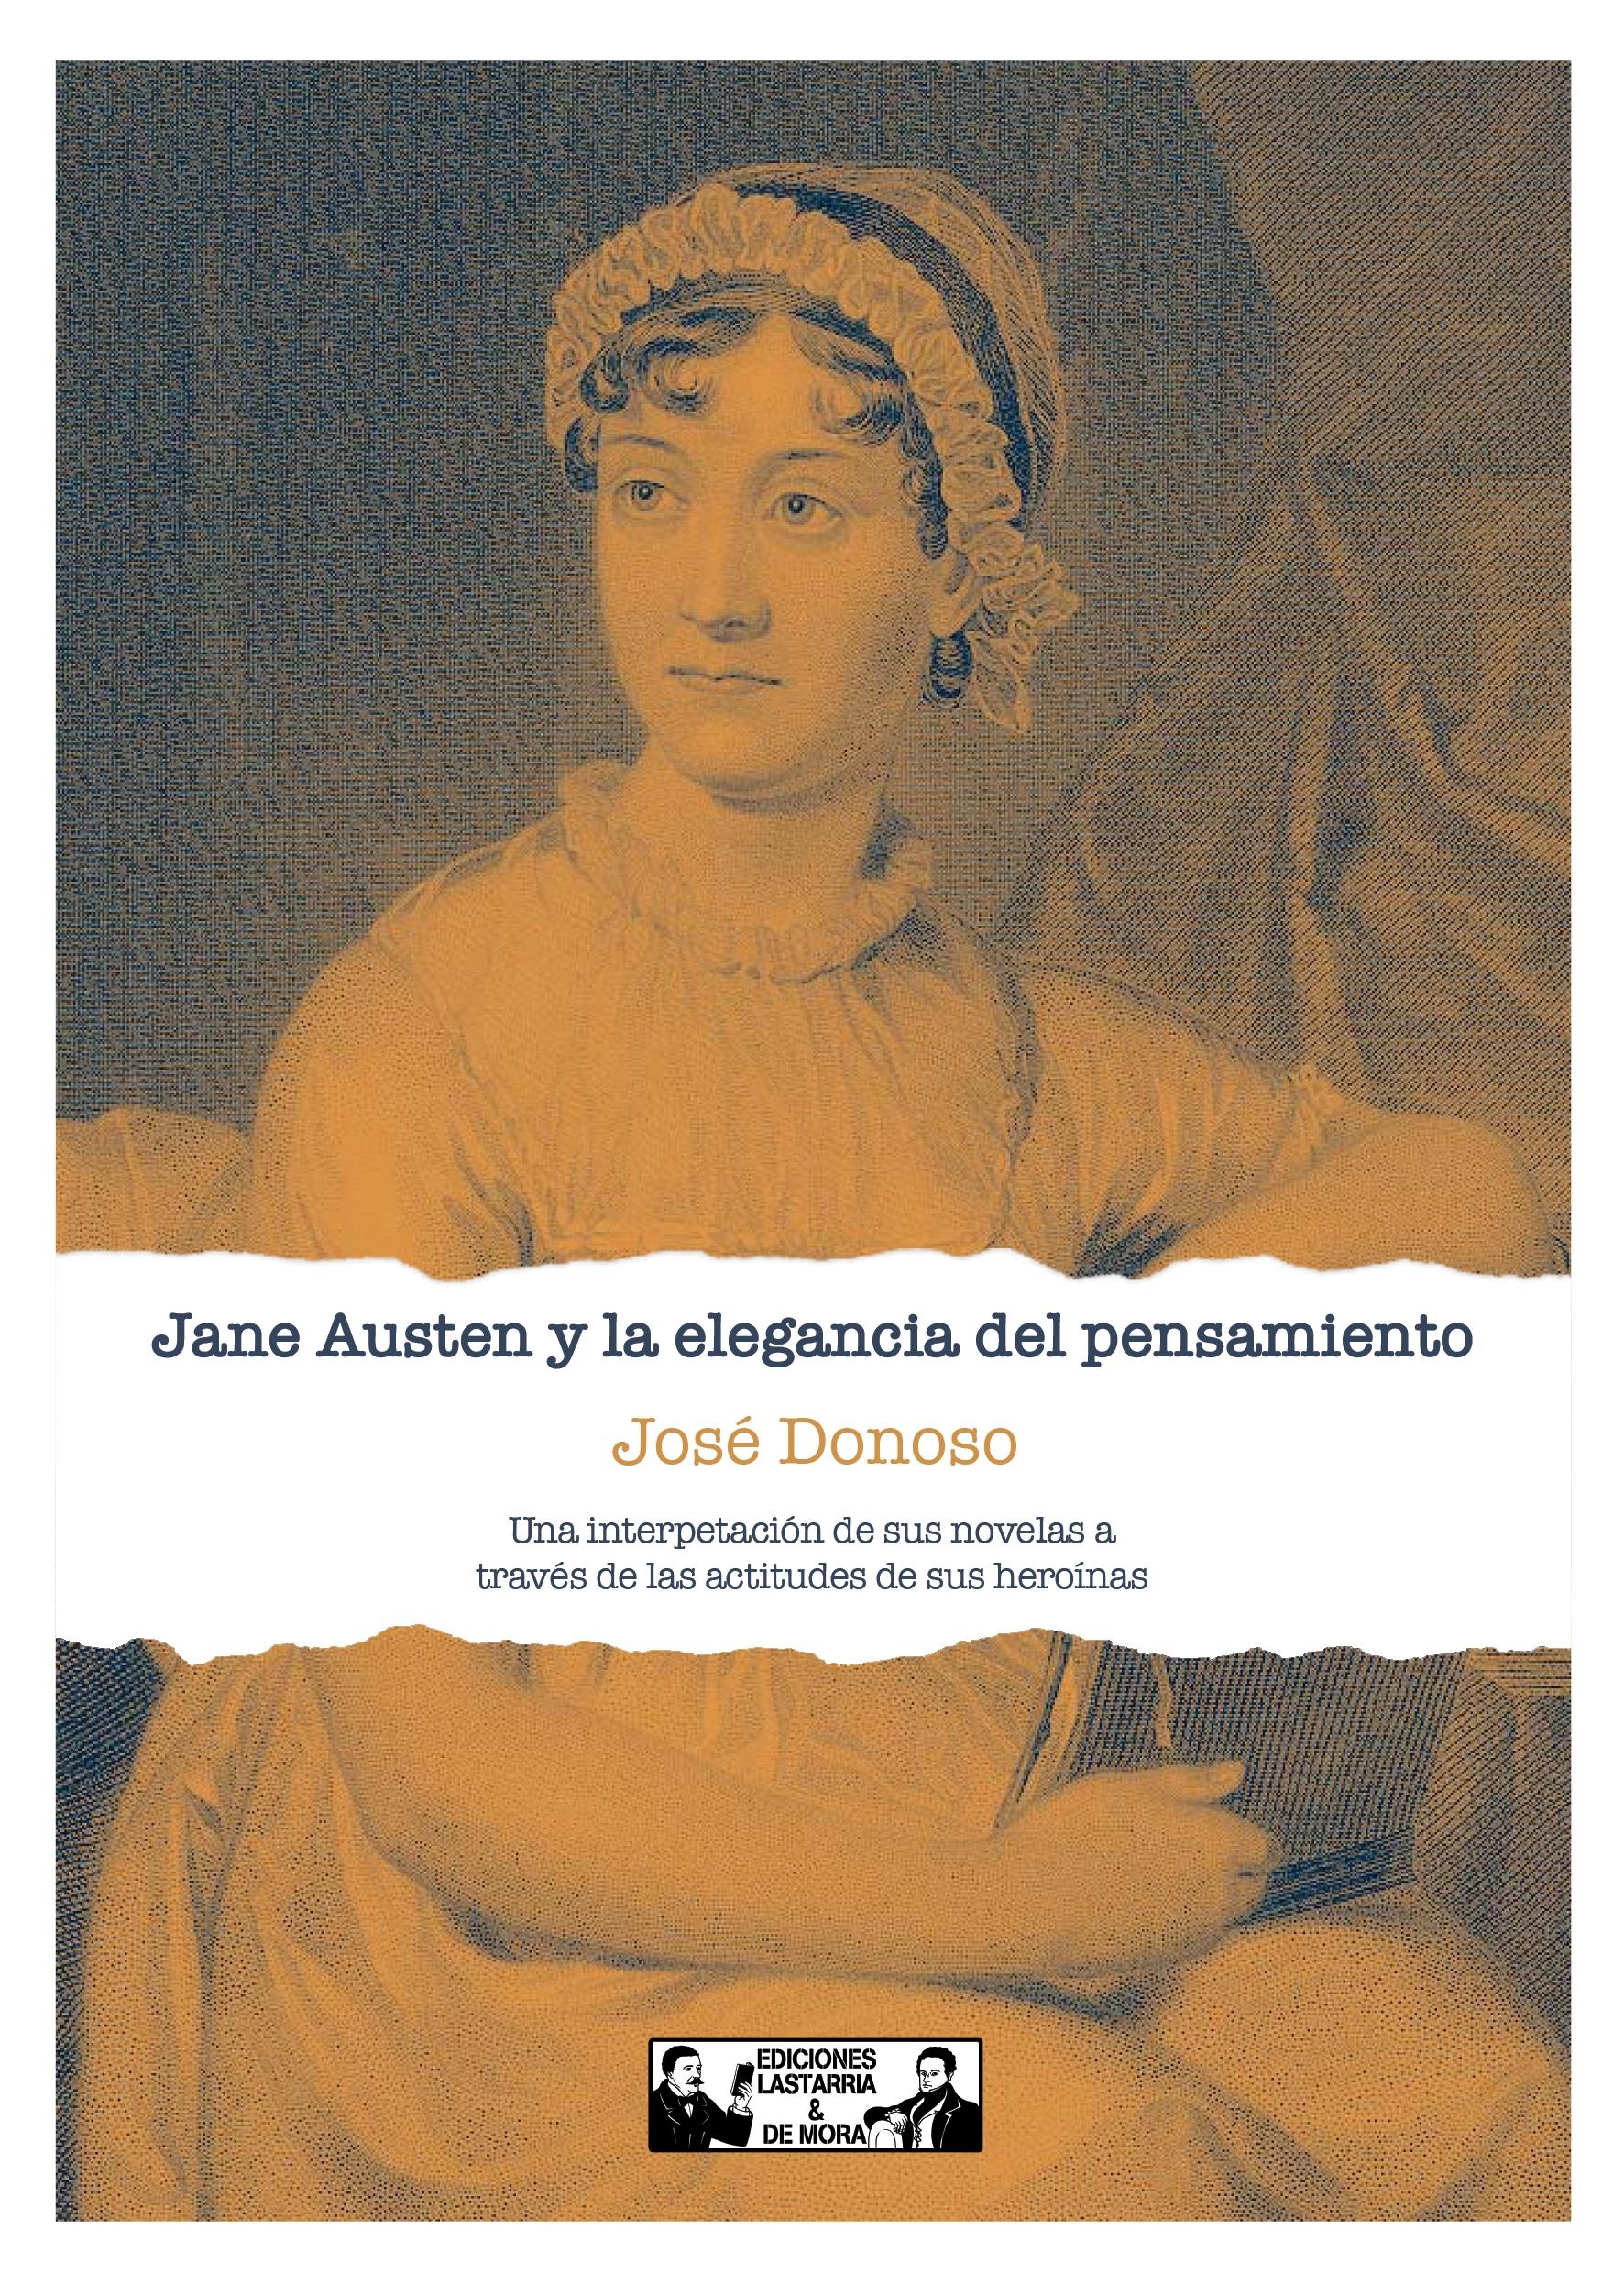 Jane Austen y la elegancia del pensamiento "Una interpretación de sus novelas a través de las actitudes de sus heroínas"